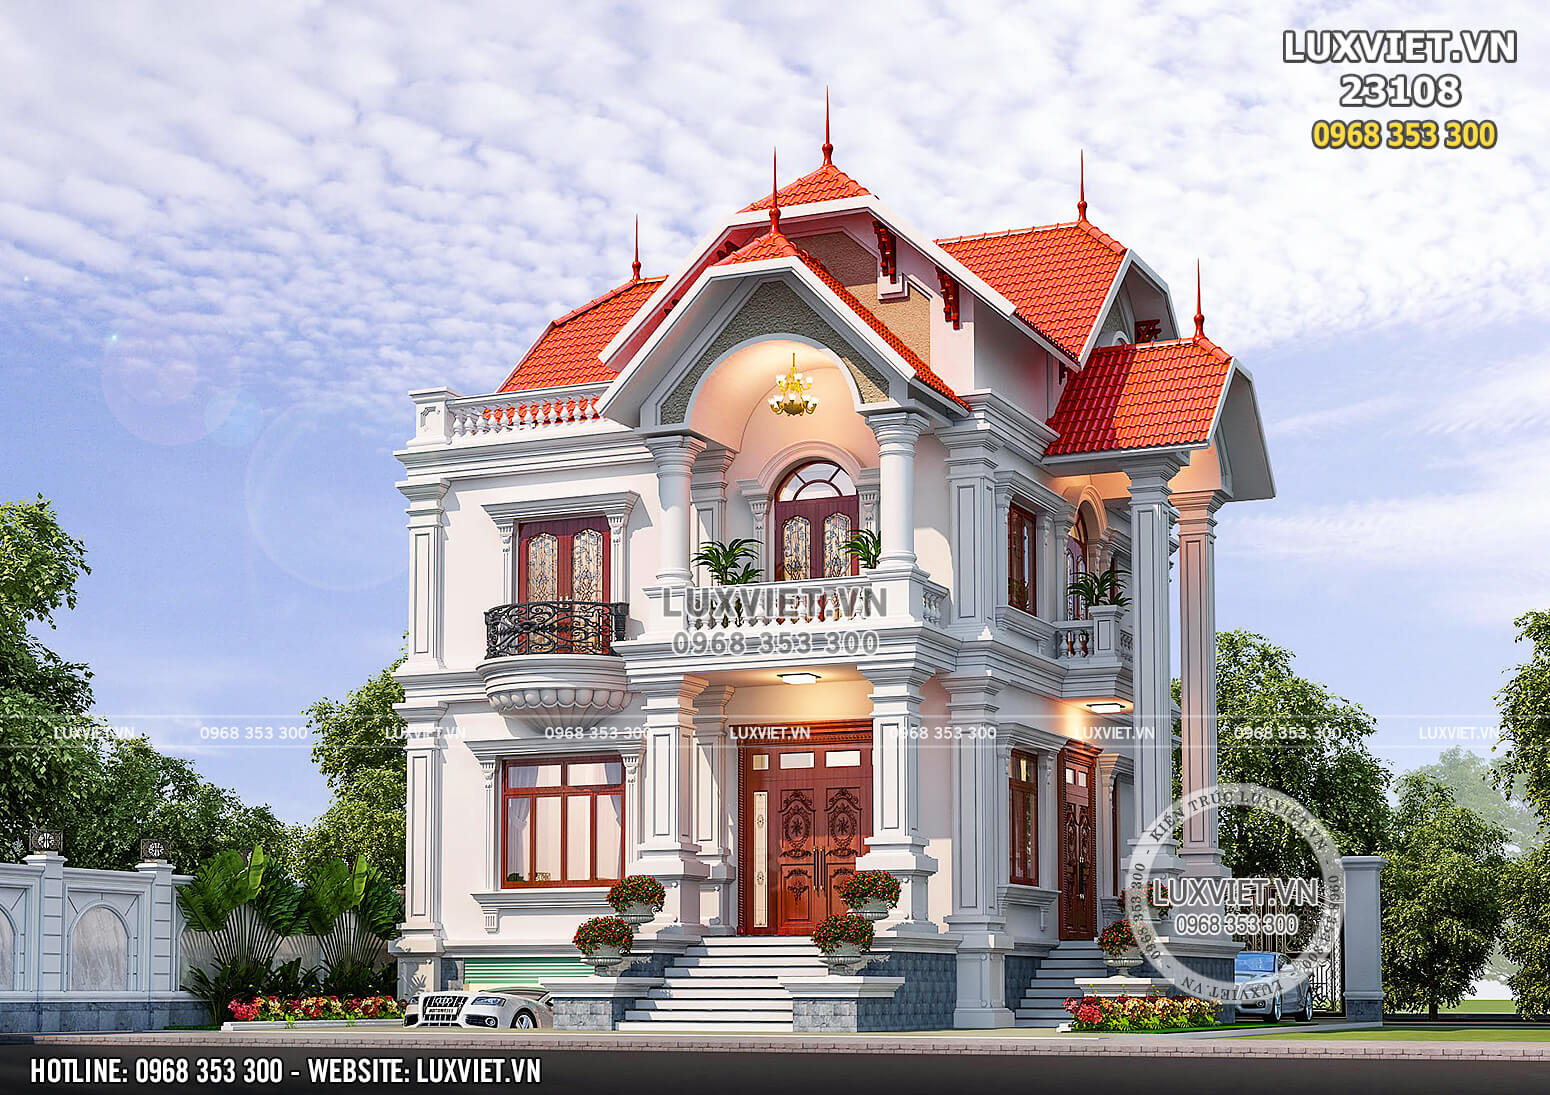 Hình ảnh: Biệt thự Pháp 2 tầng đẹp hoàn mỹ tại Hà Tĩnh - LV 23108